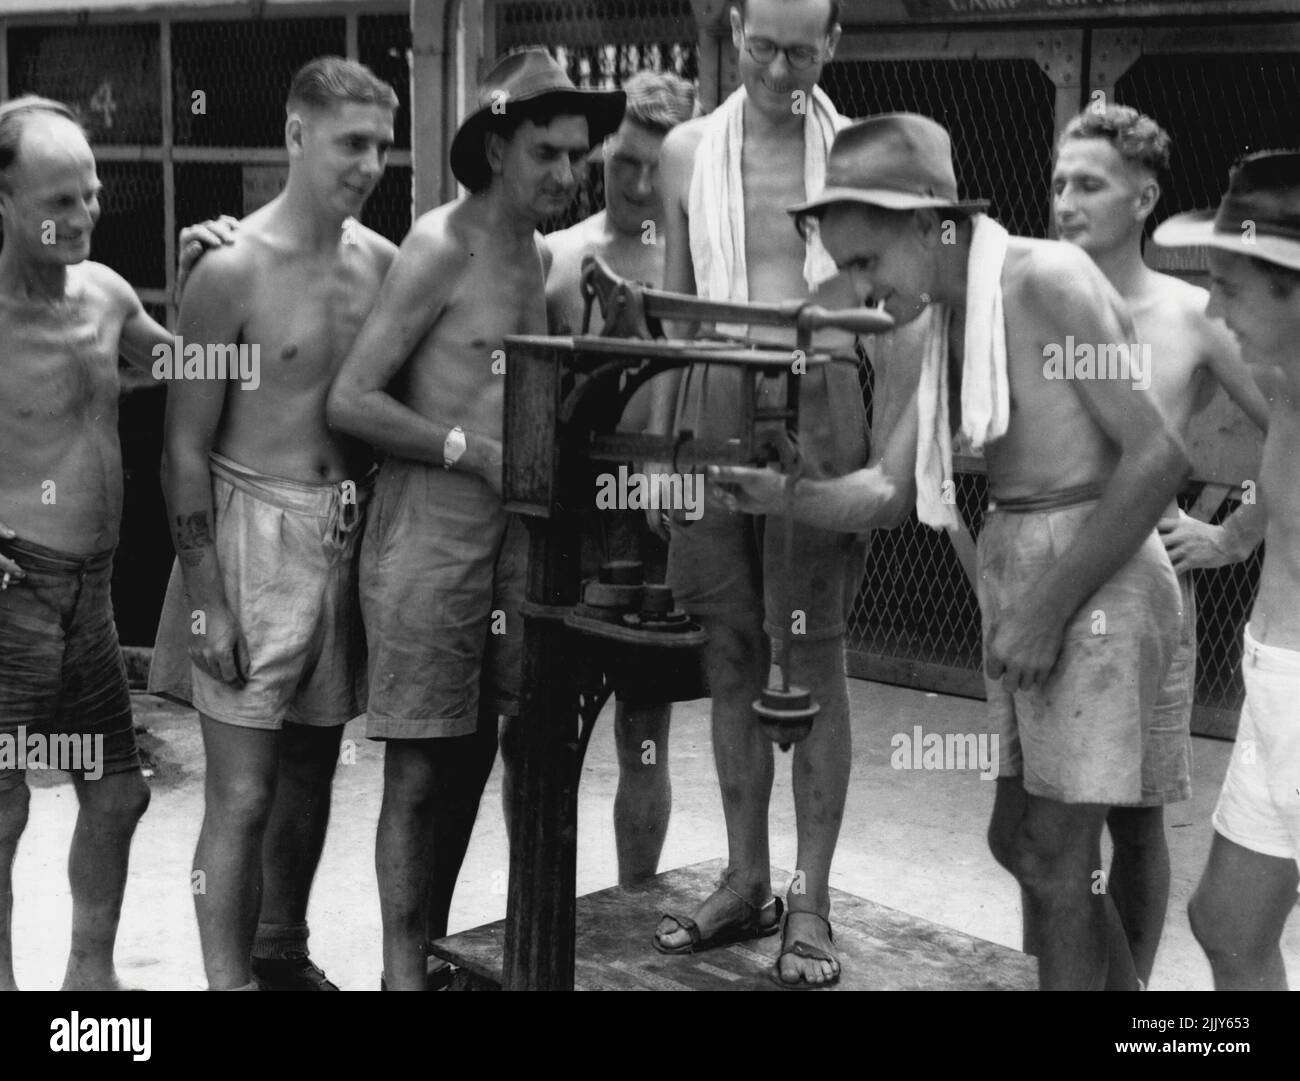 Mitglieder der 8 Division, ehemalige japanische Kriegsgefangene, überprüfen ihre Gewichtszunahme auf einer Waage im Gefängnishof. 19. September 1945. (Foto vom Australian war Memorial Canberra). Stockfoto